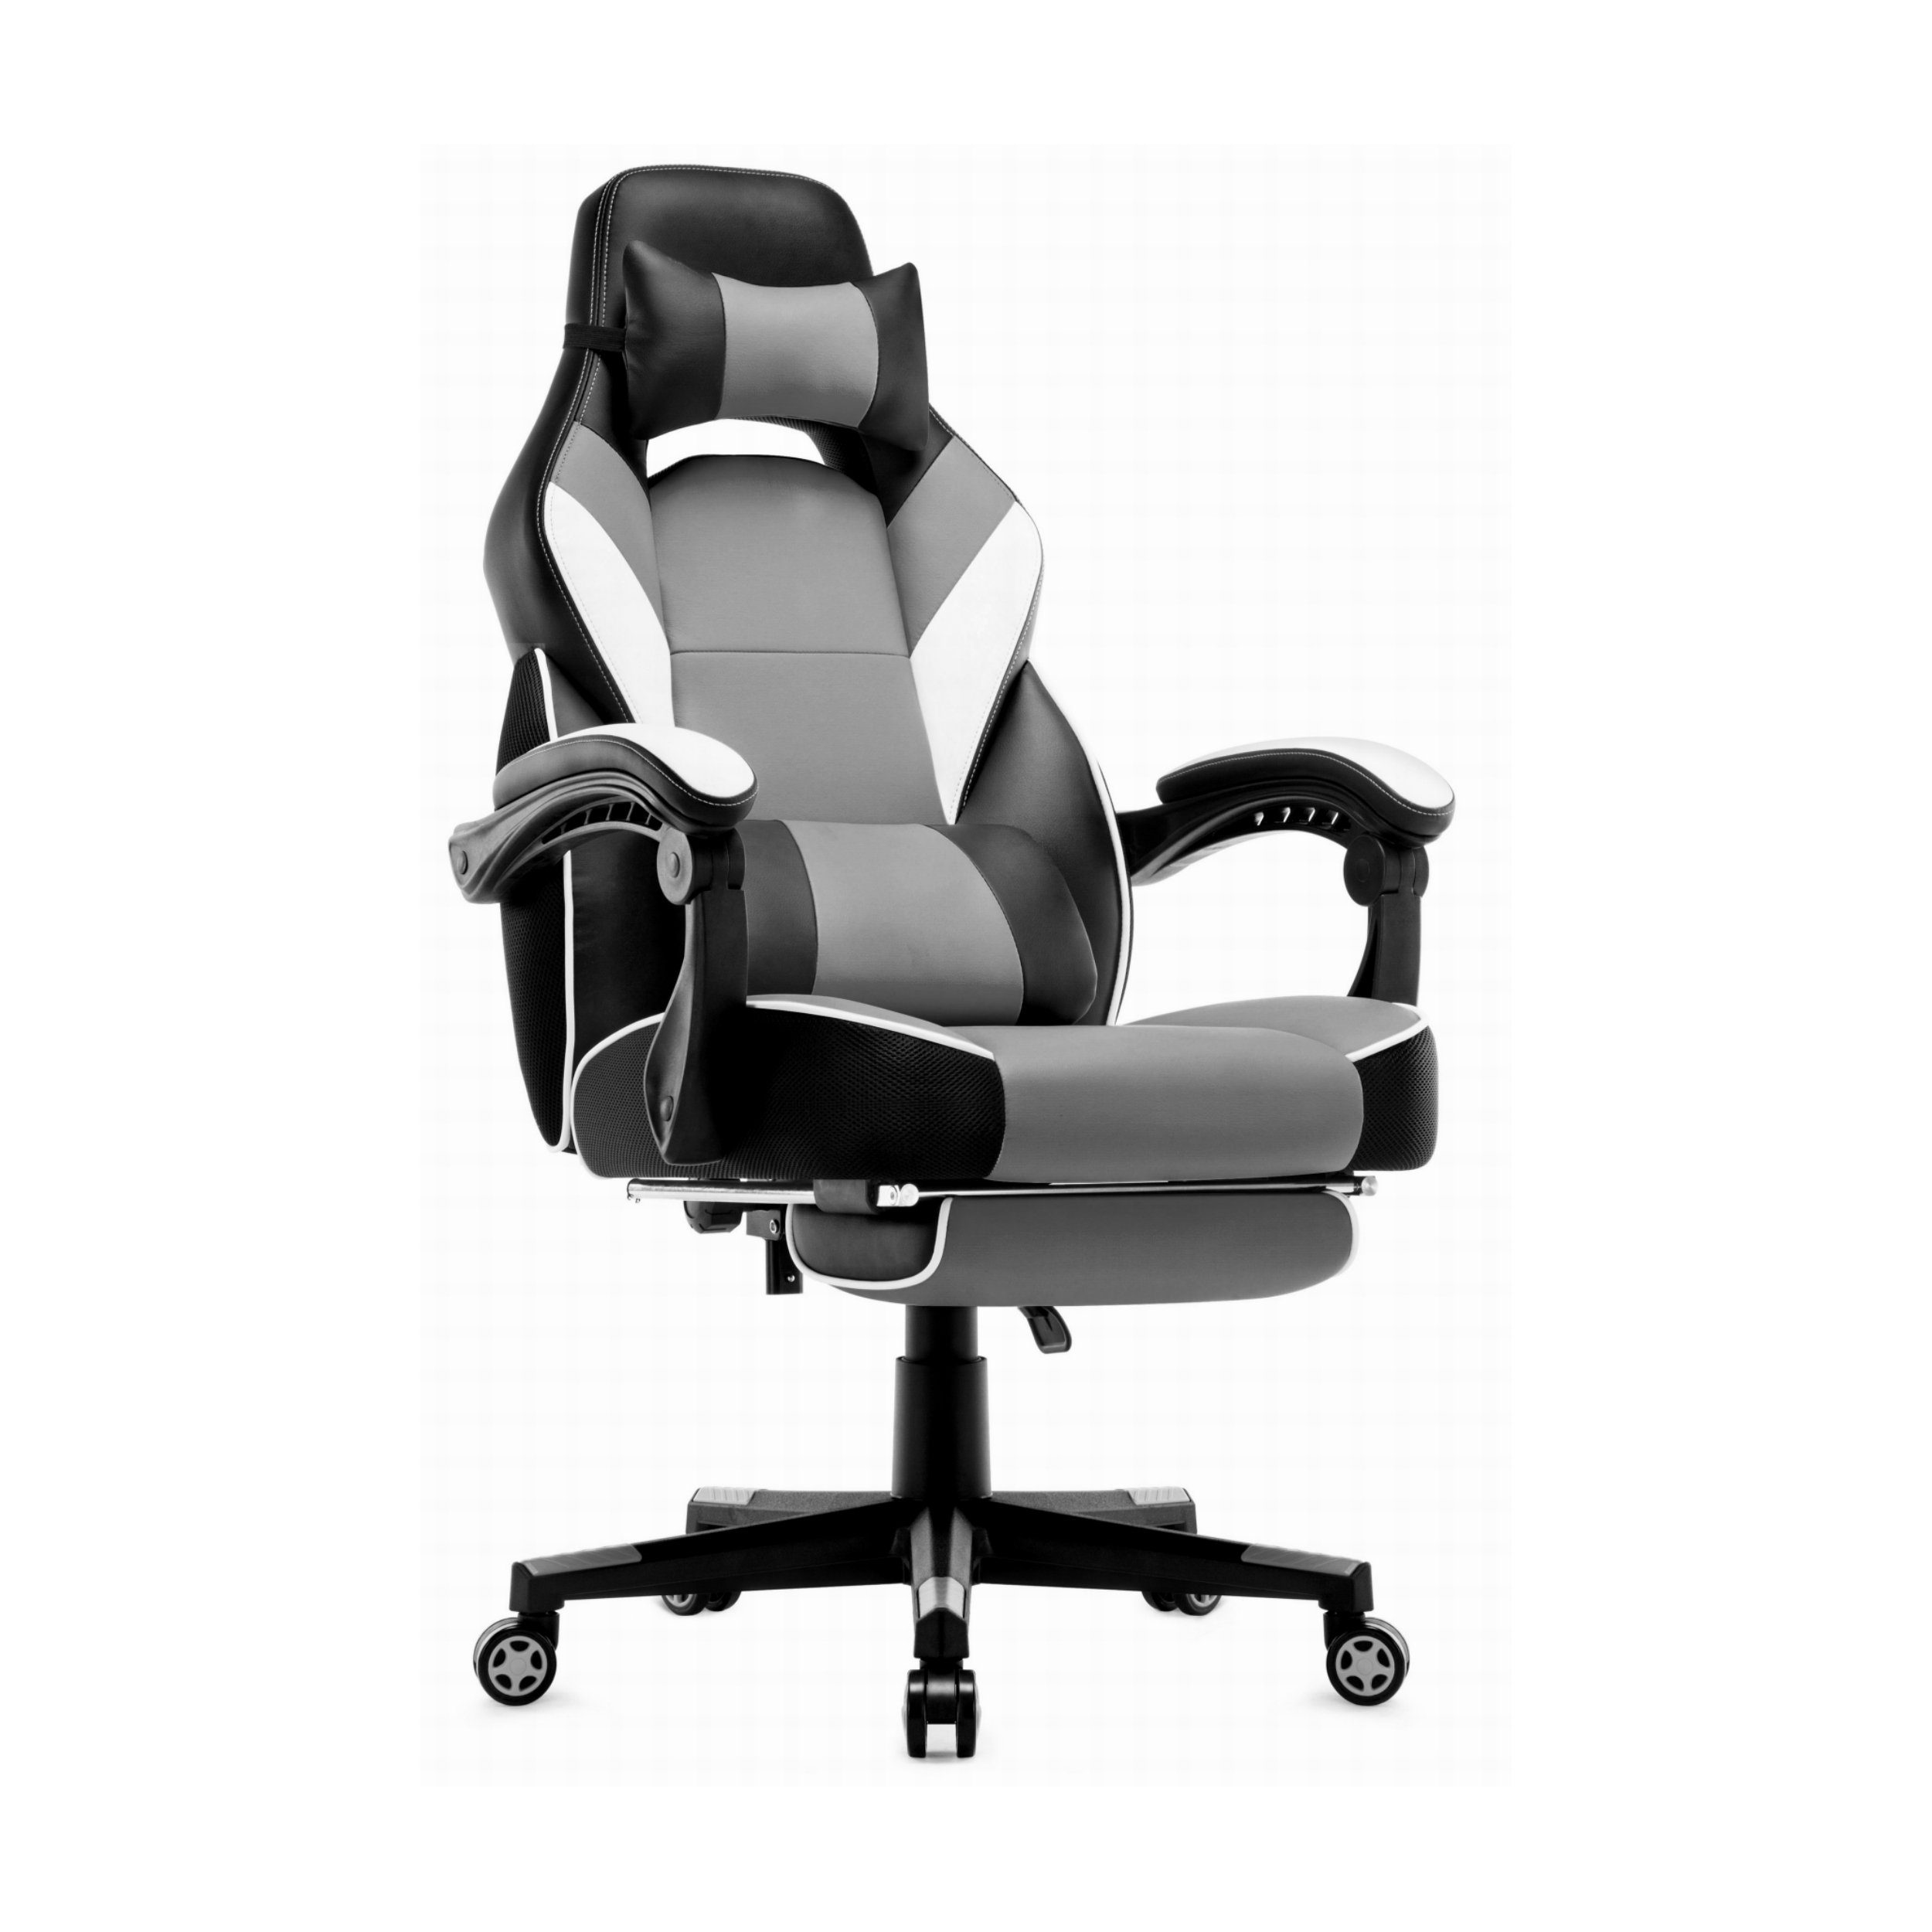 Intimate WM Heart Gaming-Stuhl mit Hoher Rückenlehne und Fußstützen grau